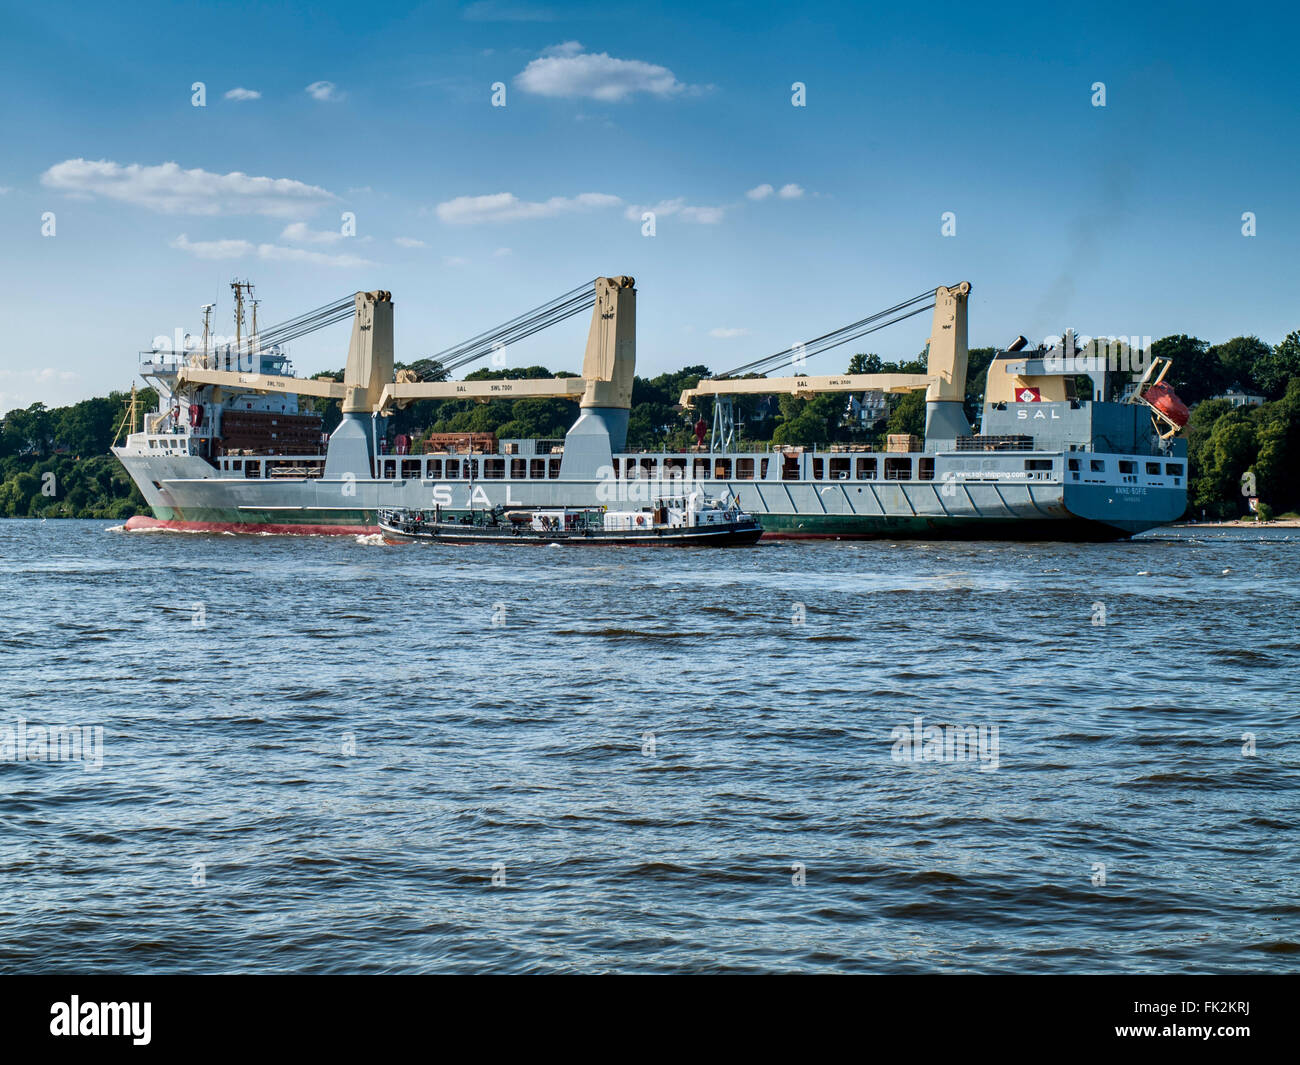 Mehrzweck-Schiff Anne-Sofie an der Elbe ausgehende aus dem Hafen Hamburg, Deutschland. Stockfoto